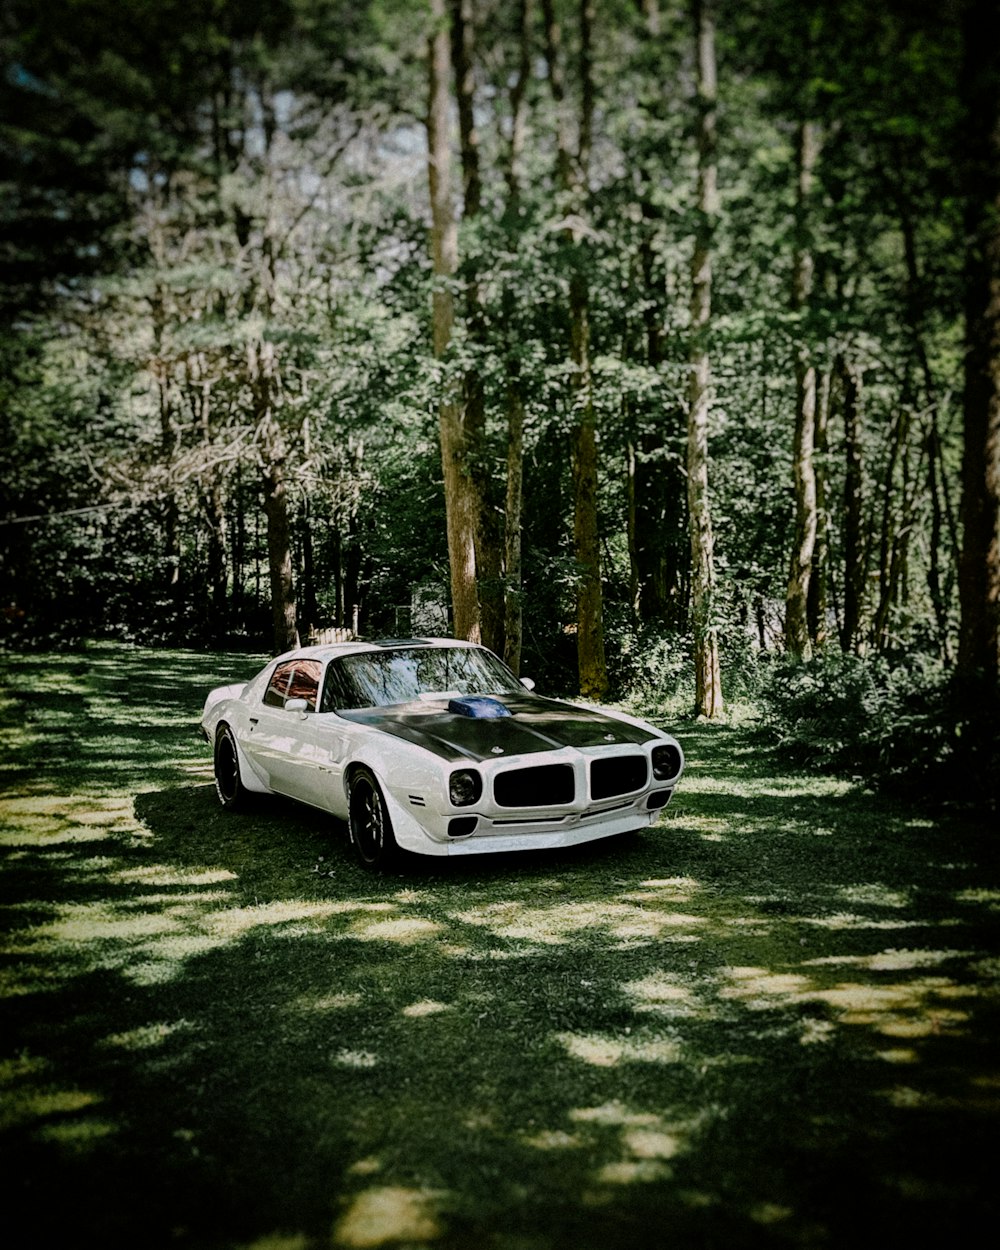 숲 한가운데에 주차된 하얀 차